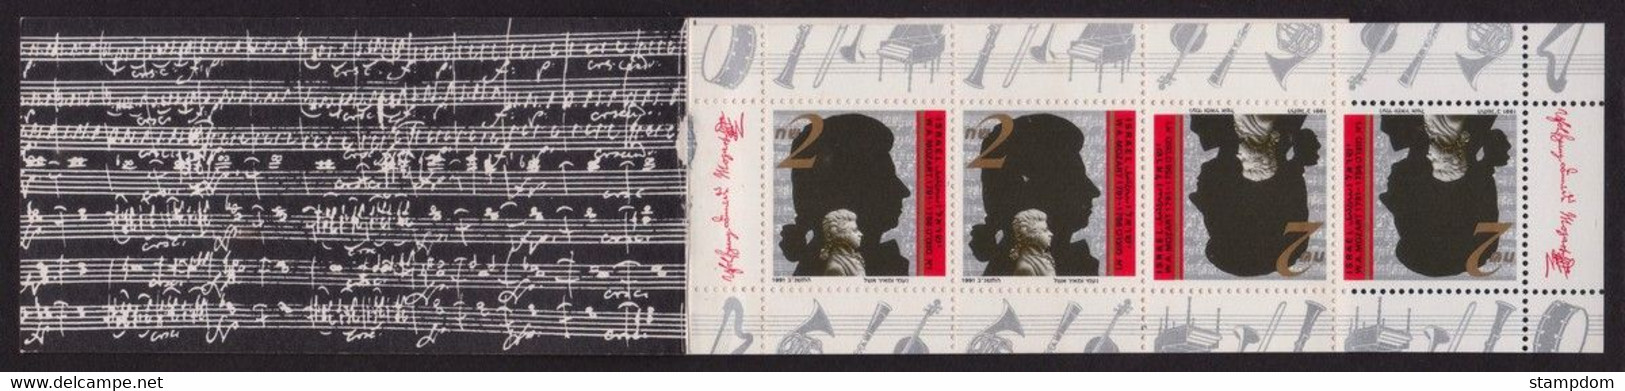 ISRAEL 1991 Mozart BOOKLET Sc#1101a MNH @BB103 - Carnets